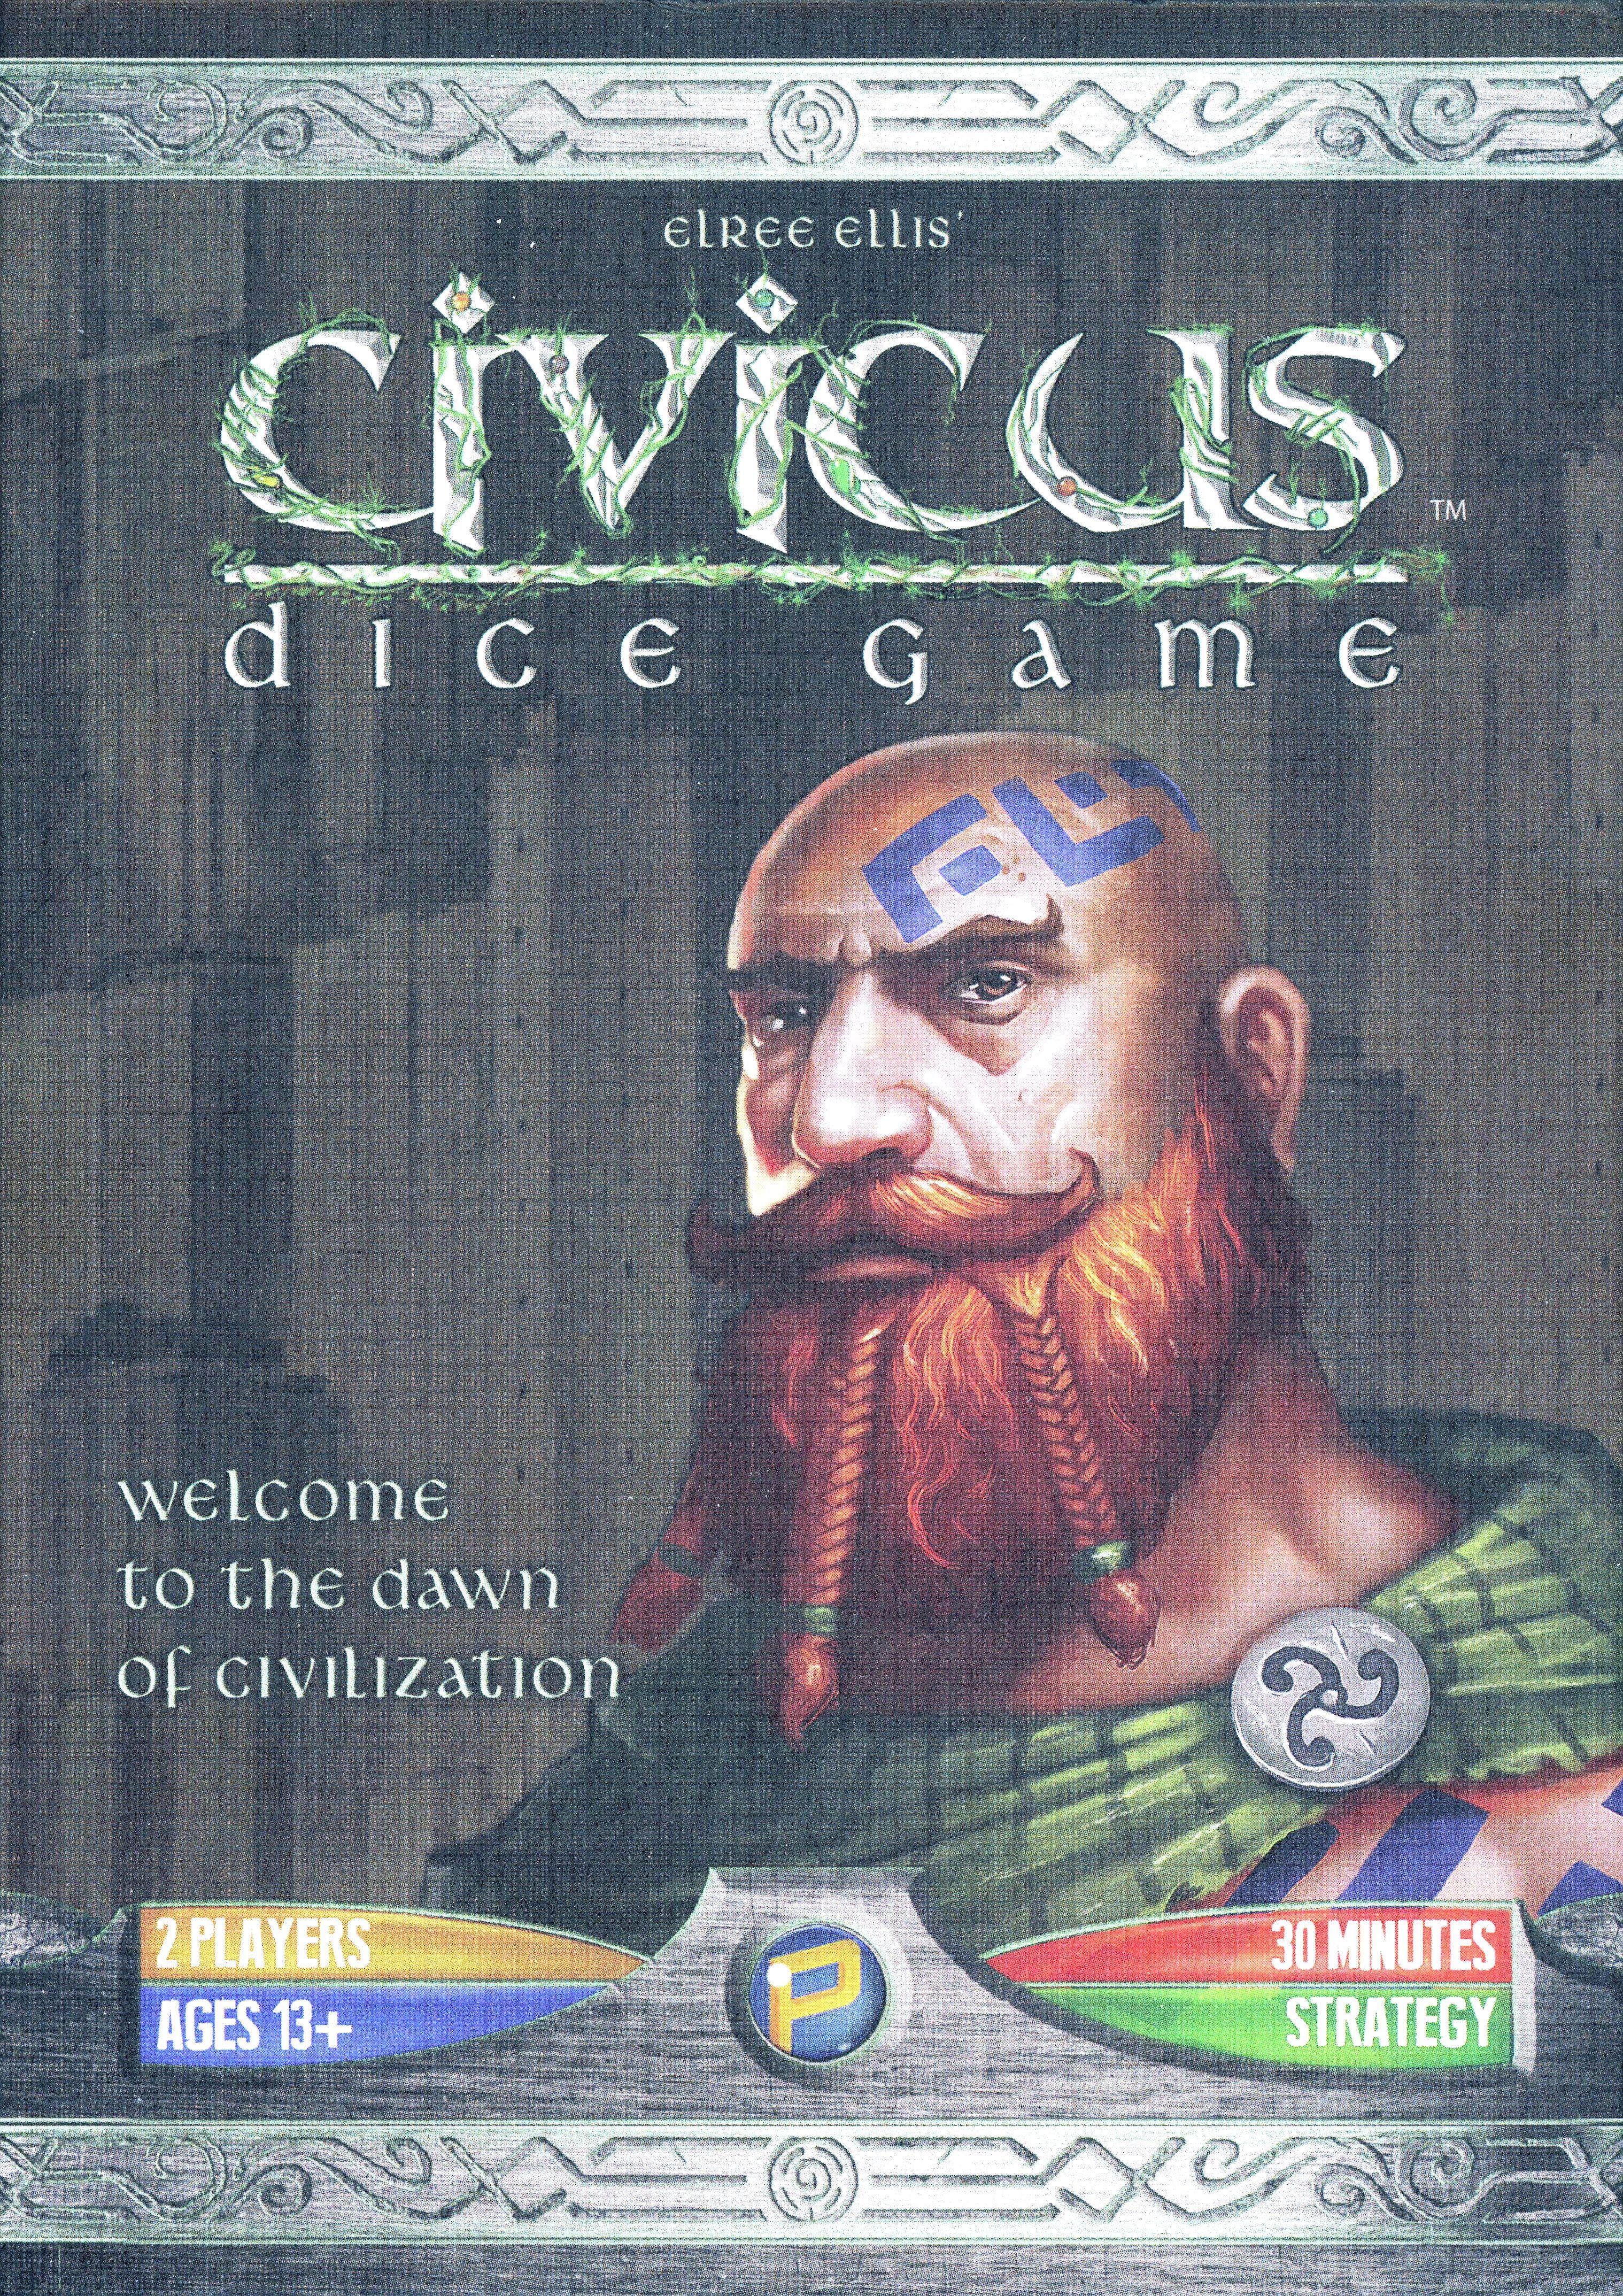 Civicus Dice Game